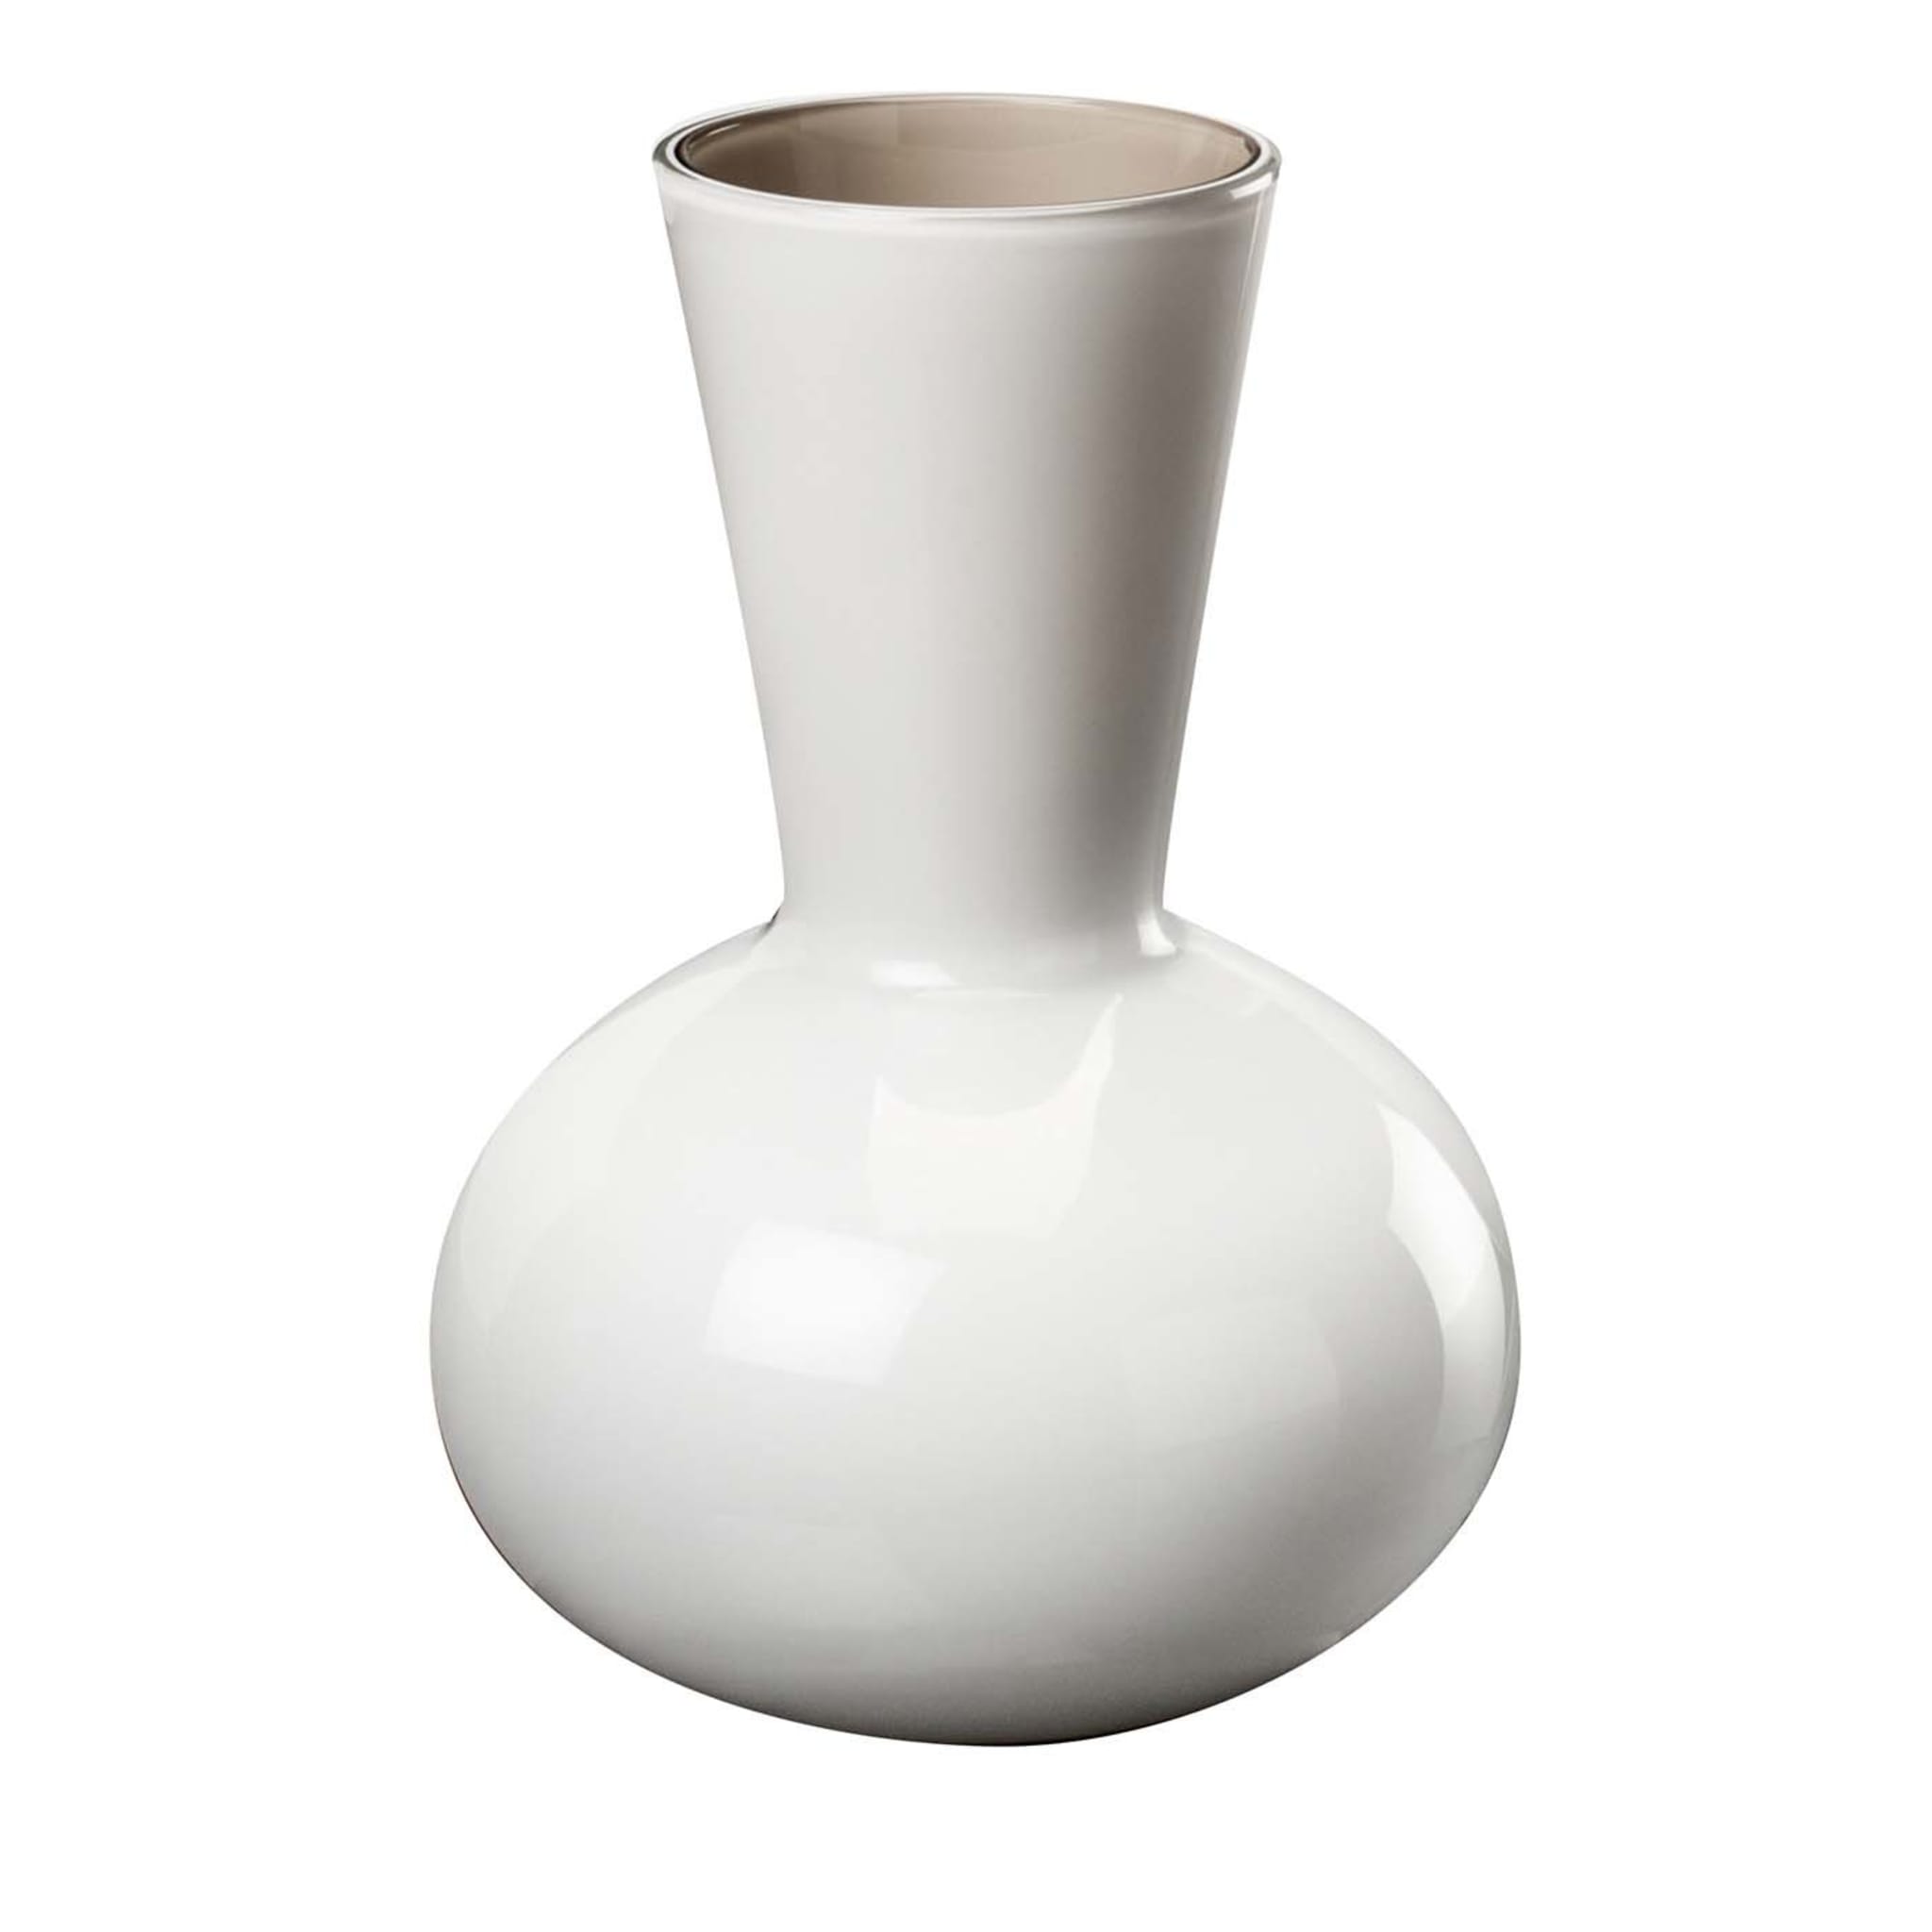 Idria White Vase by Paolo Venini - Main view